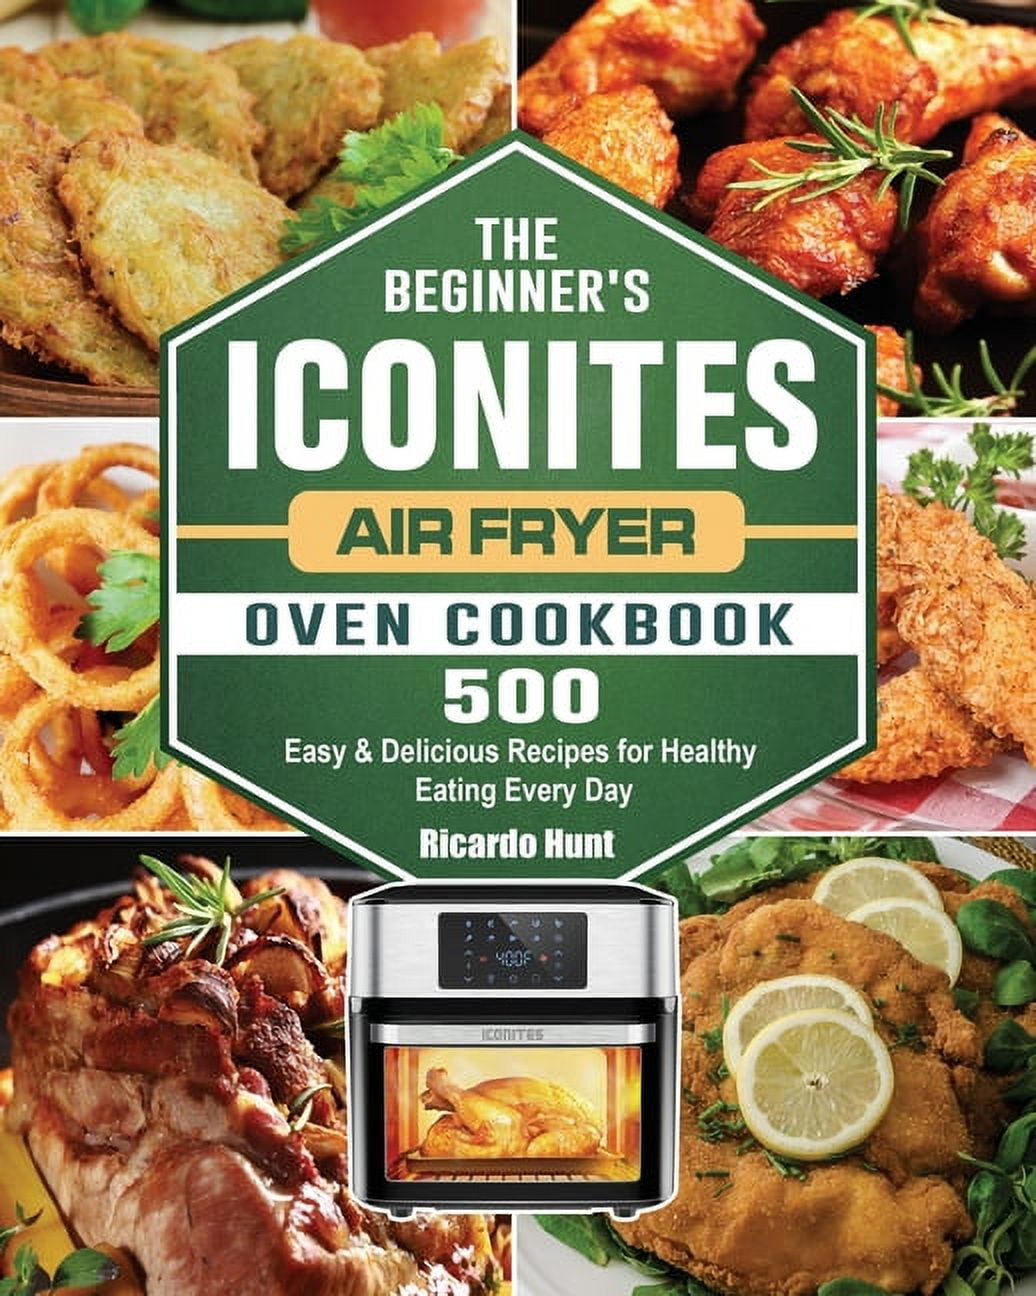 Iconites Air Fryer